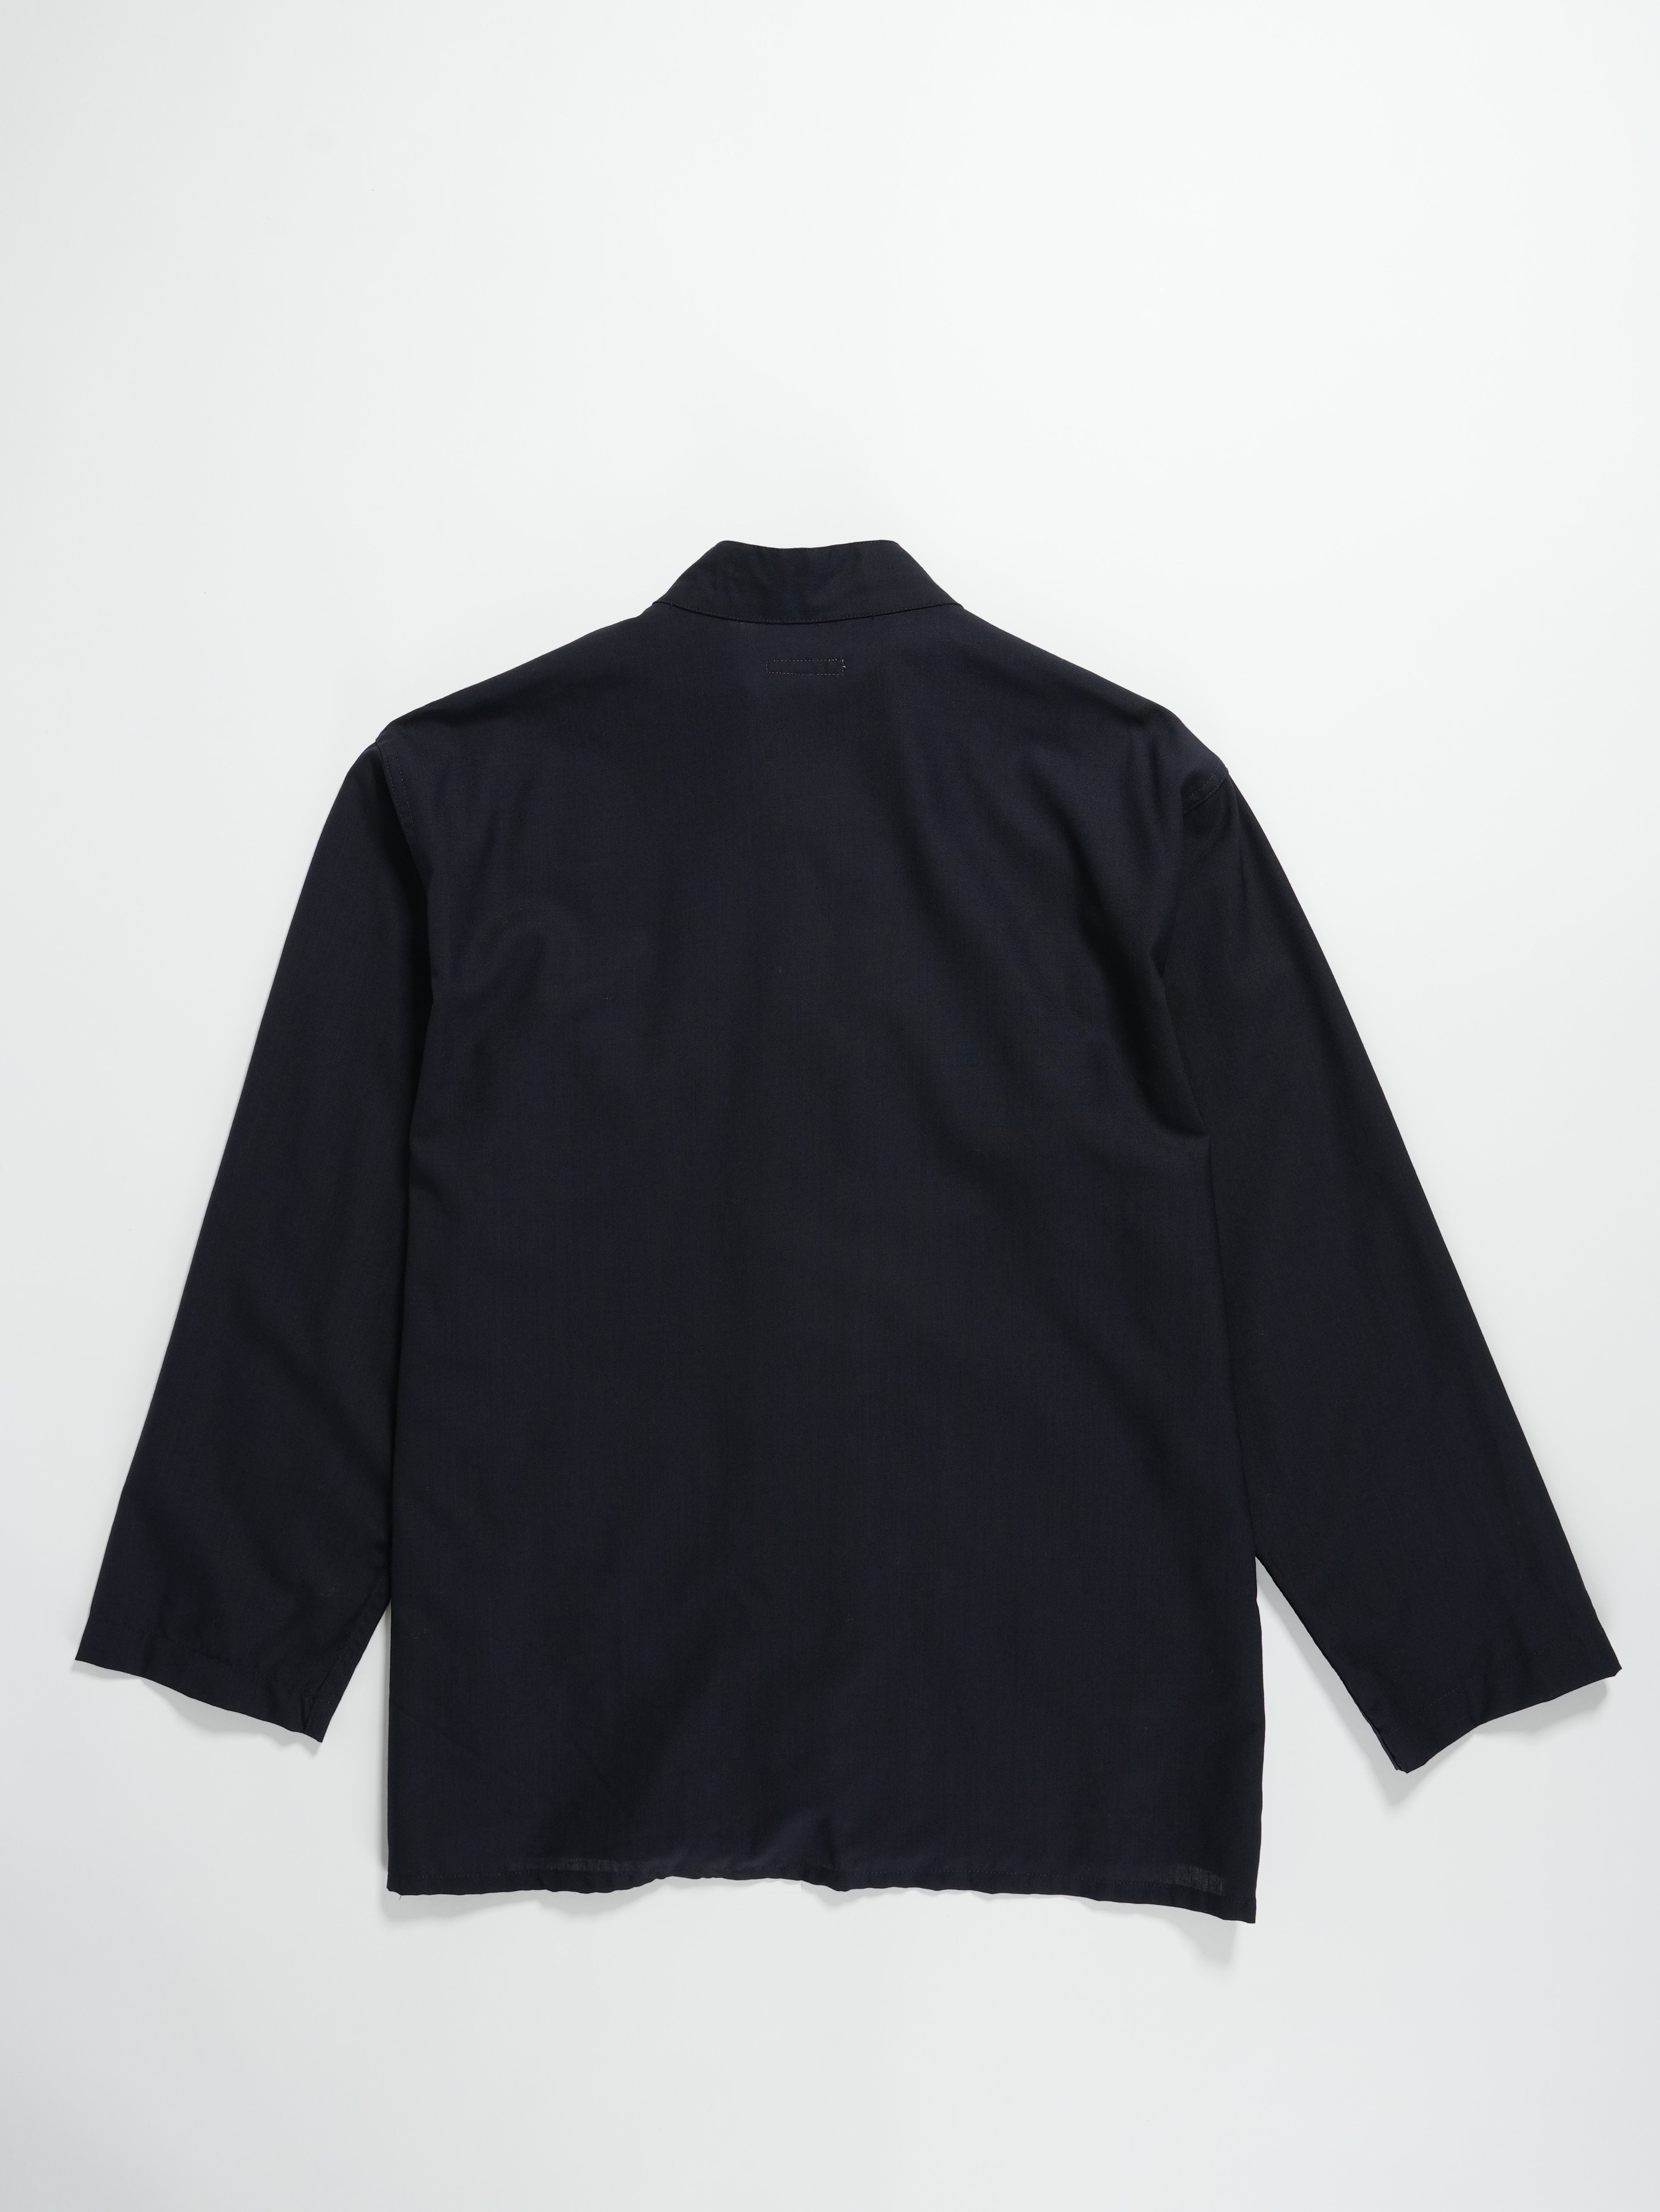 Dayton Shirt - Dk. Navy Tropical Wool